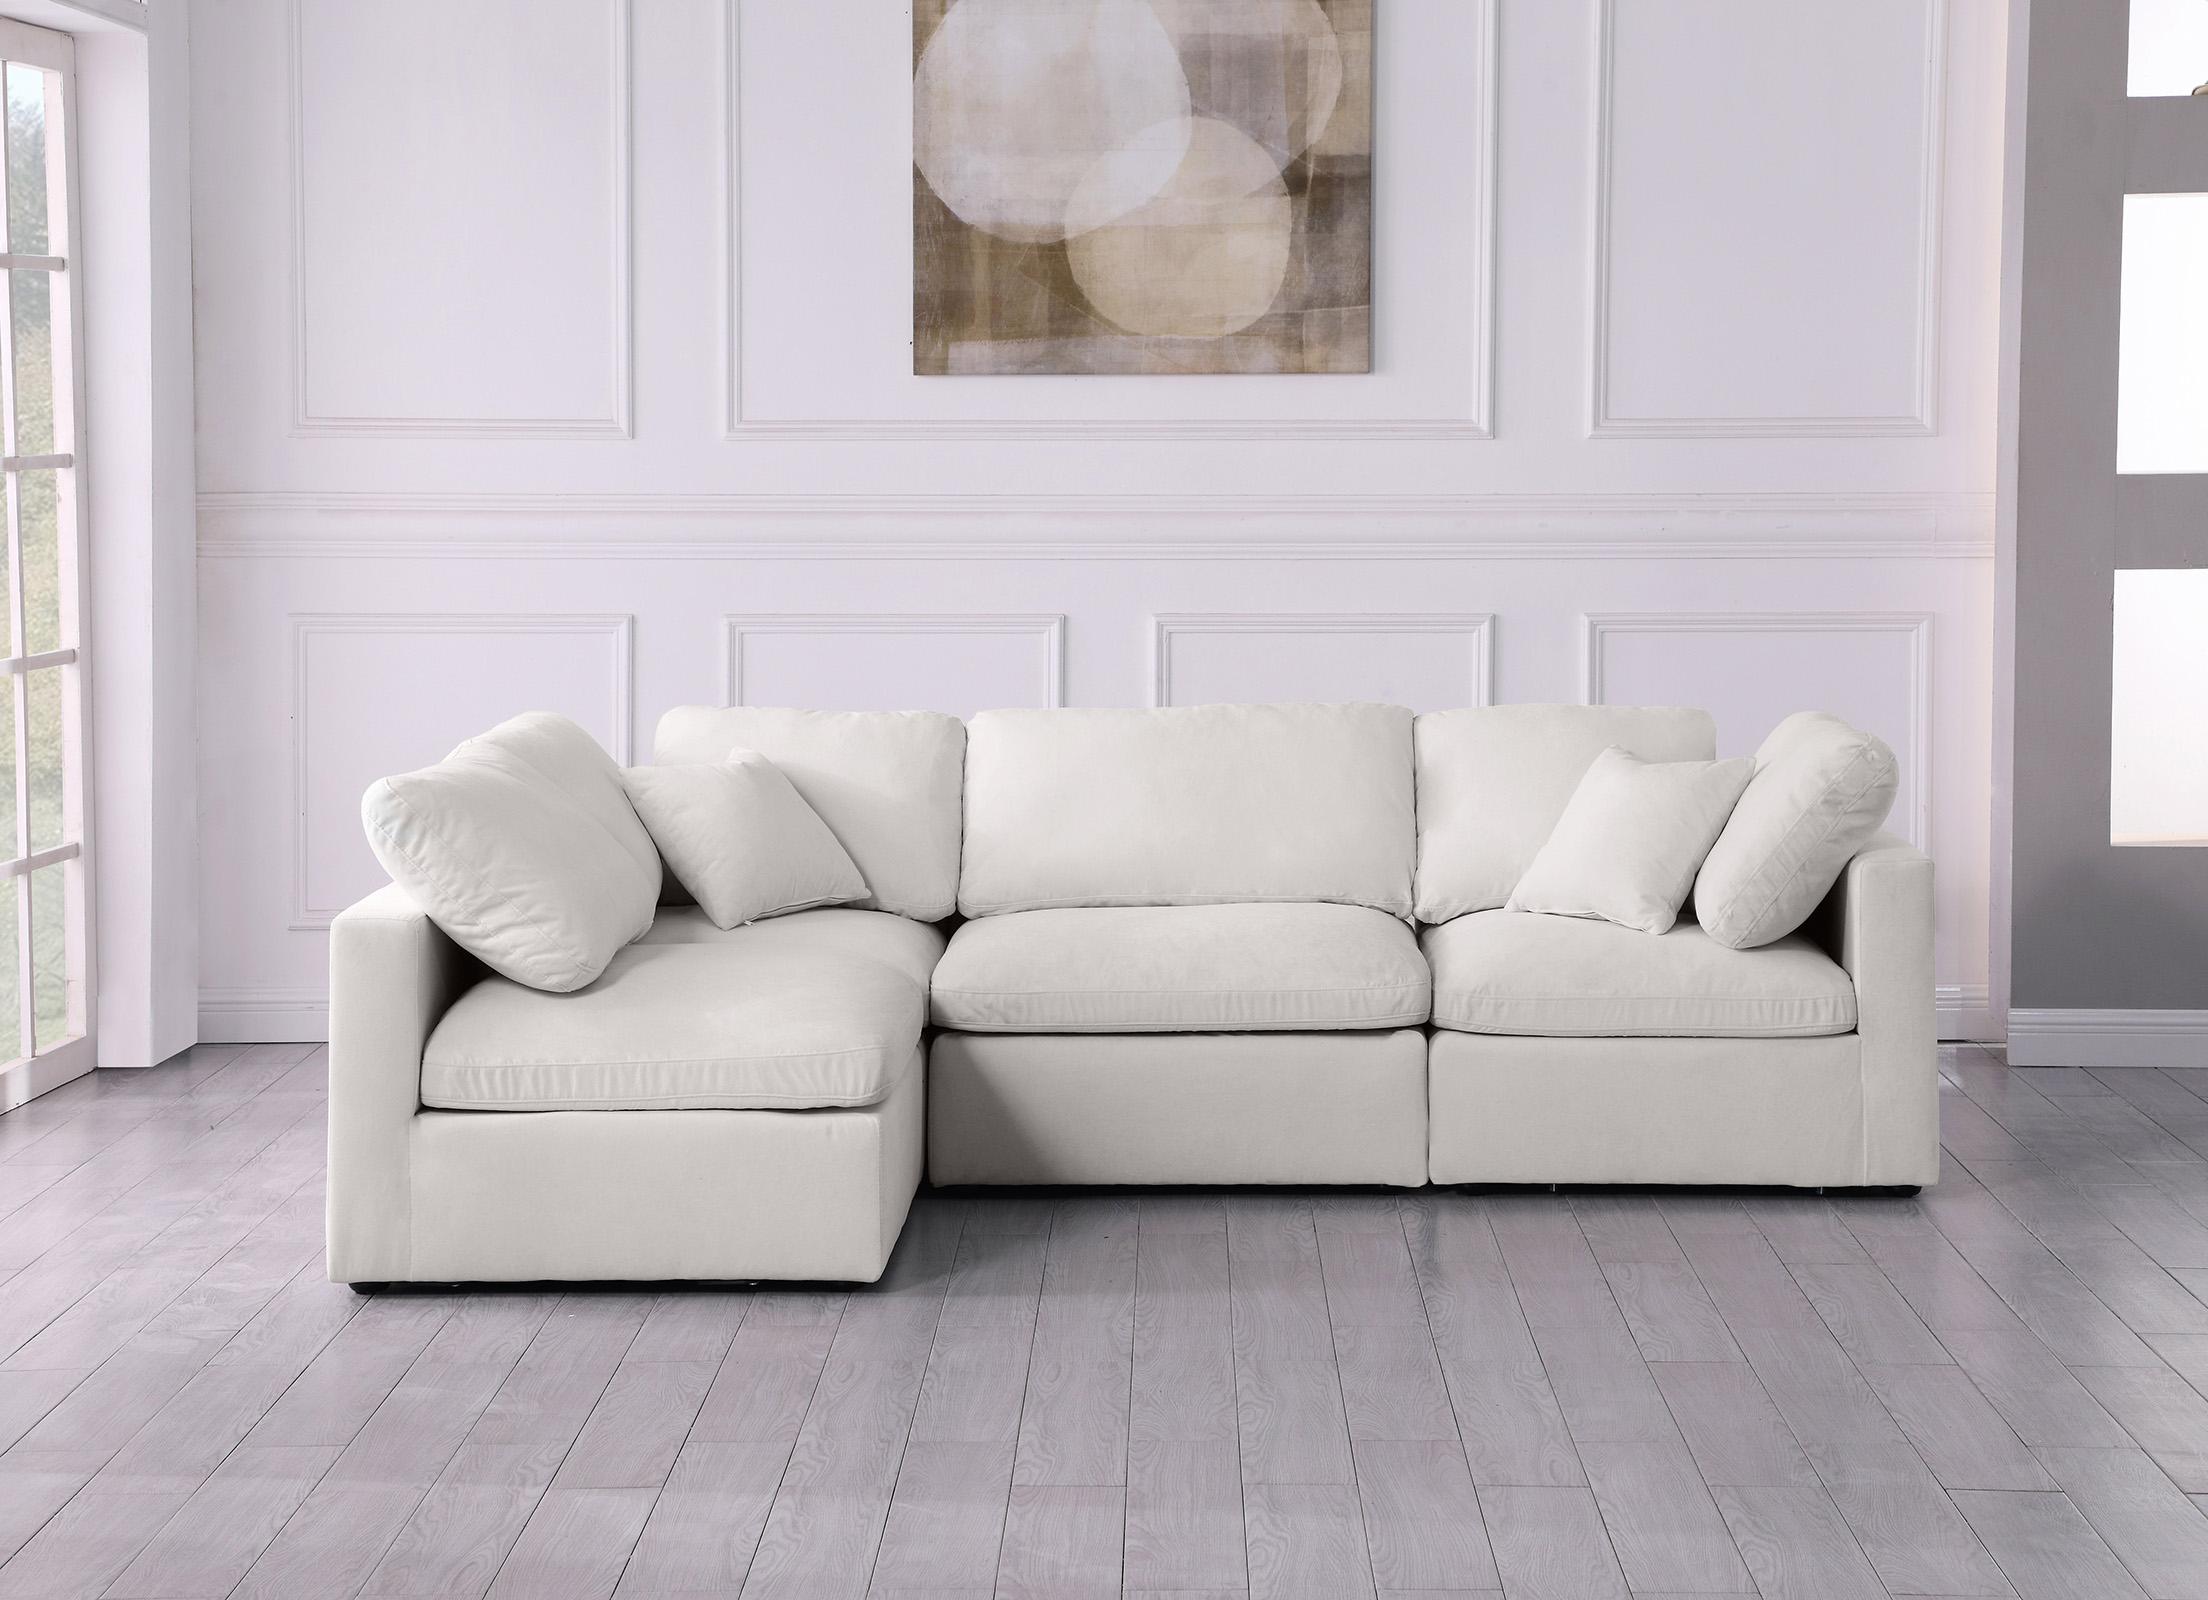 

    
Meridian Furniture 602Cream-Sec4B Sectional Sofa Cream 602Cream-Sec4B
